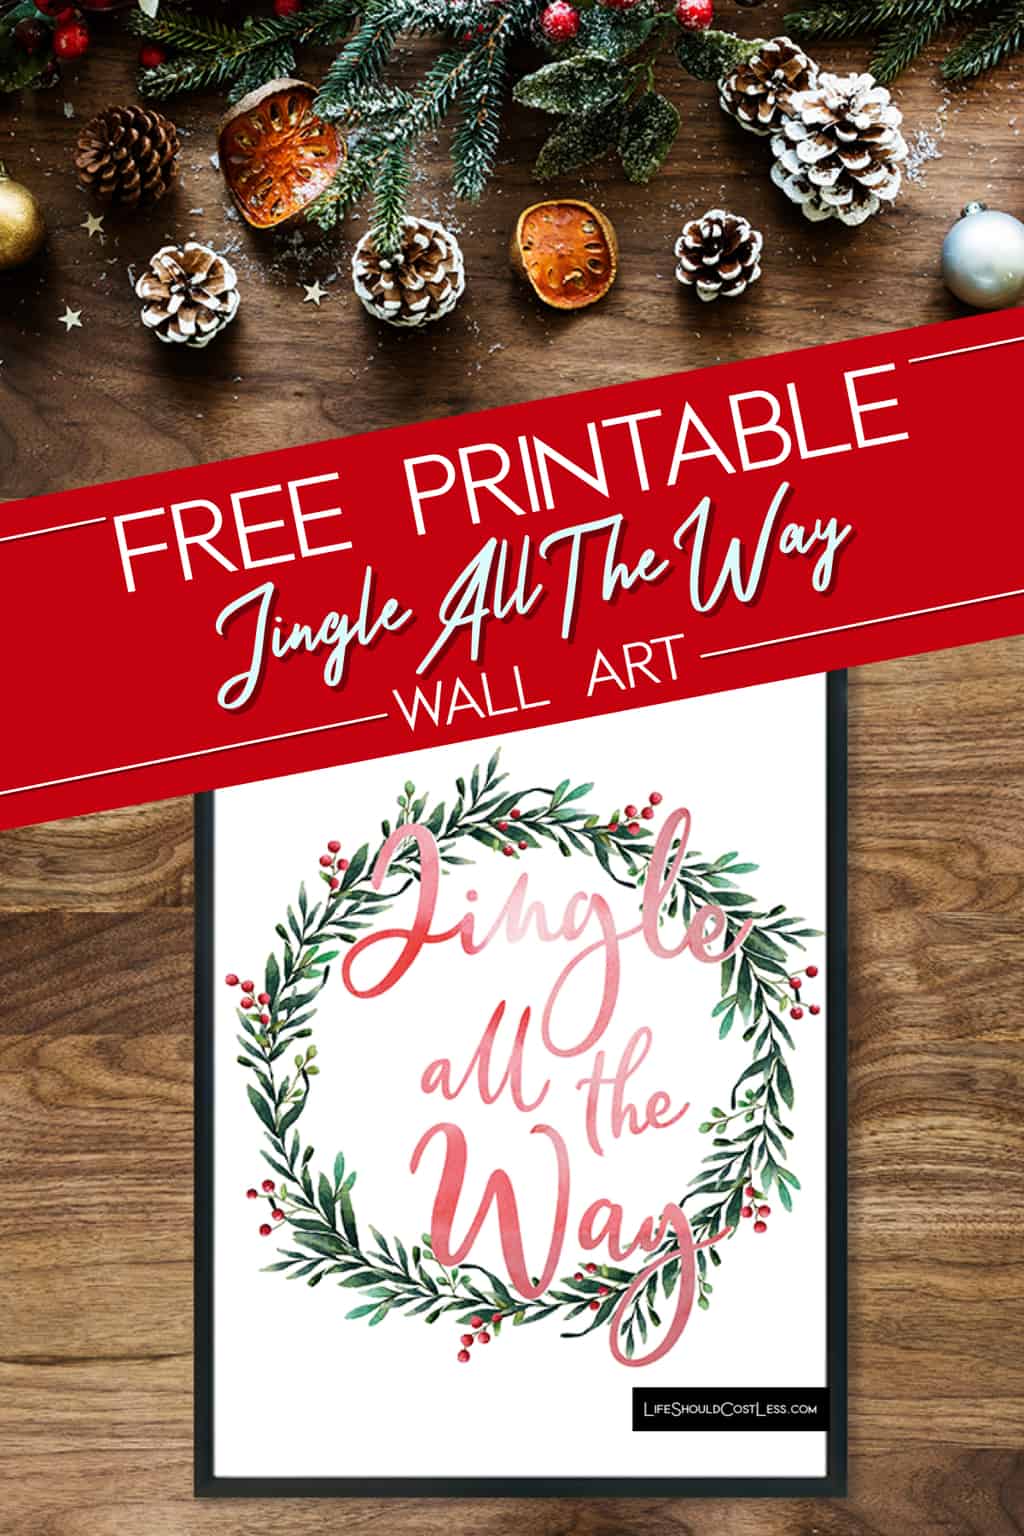 Free Printable Jingle All The Way Wall Art lifeshouldcostless.com